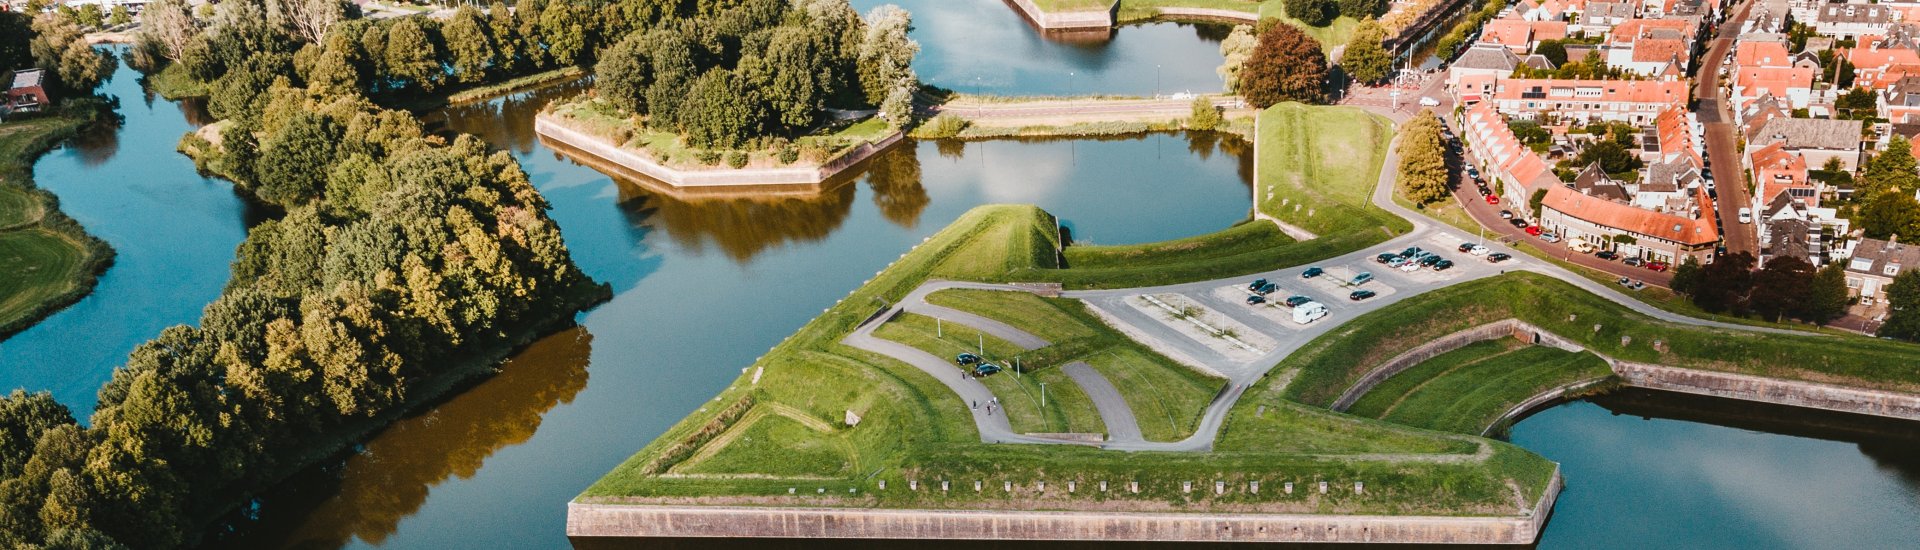 Naarden-vesting maakt onderdeel uit van Werelderfgoedsite 'Hollandse Waterlinies'